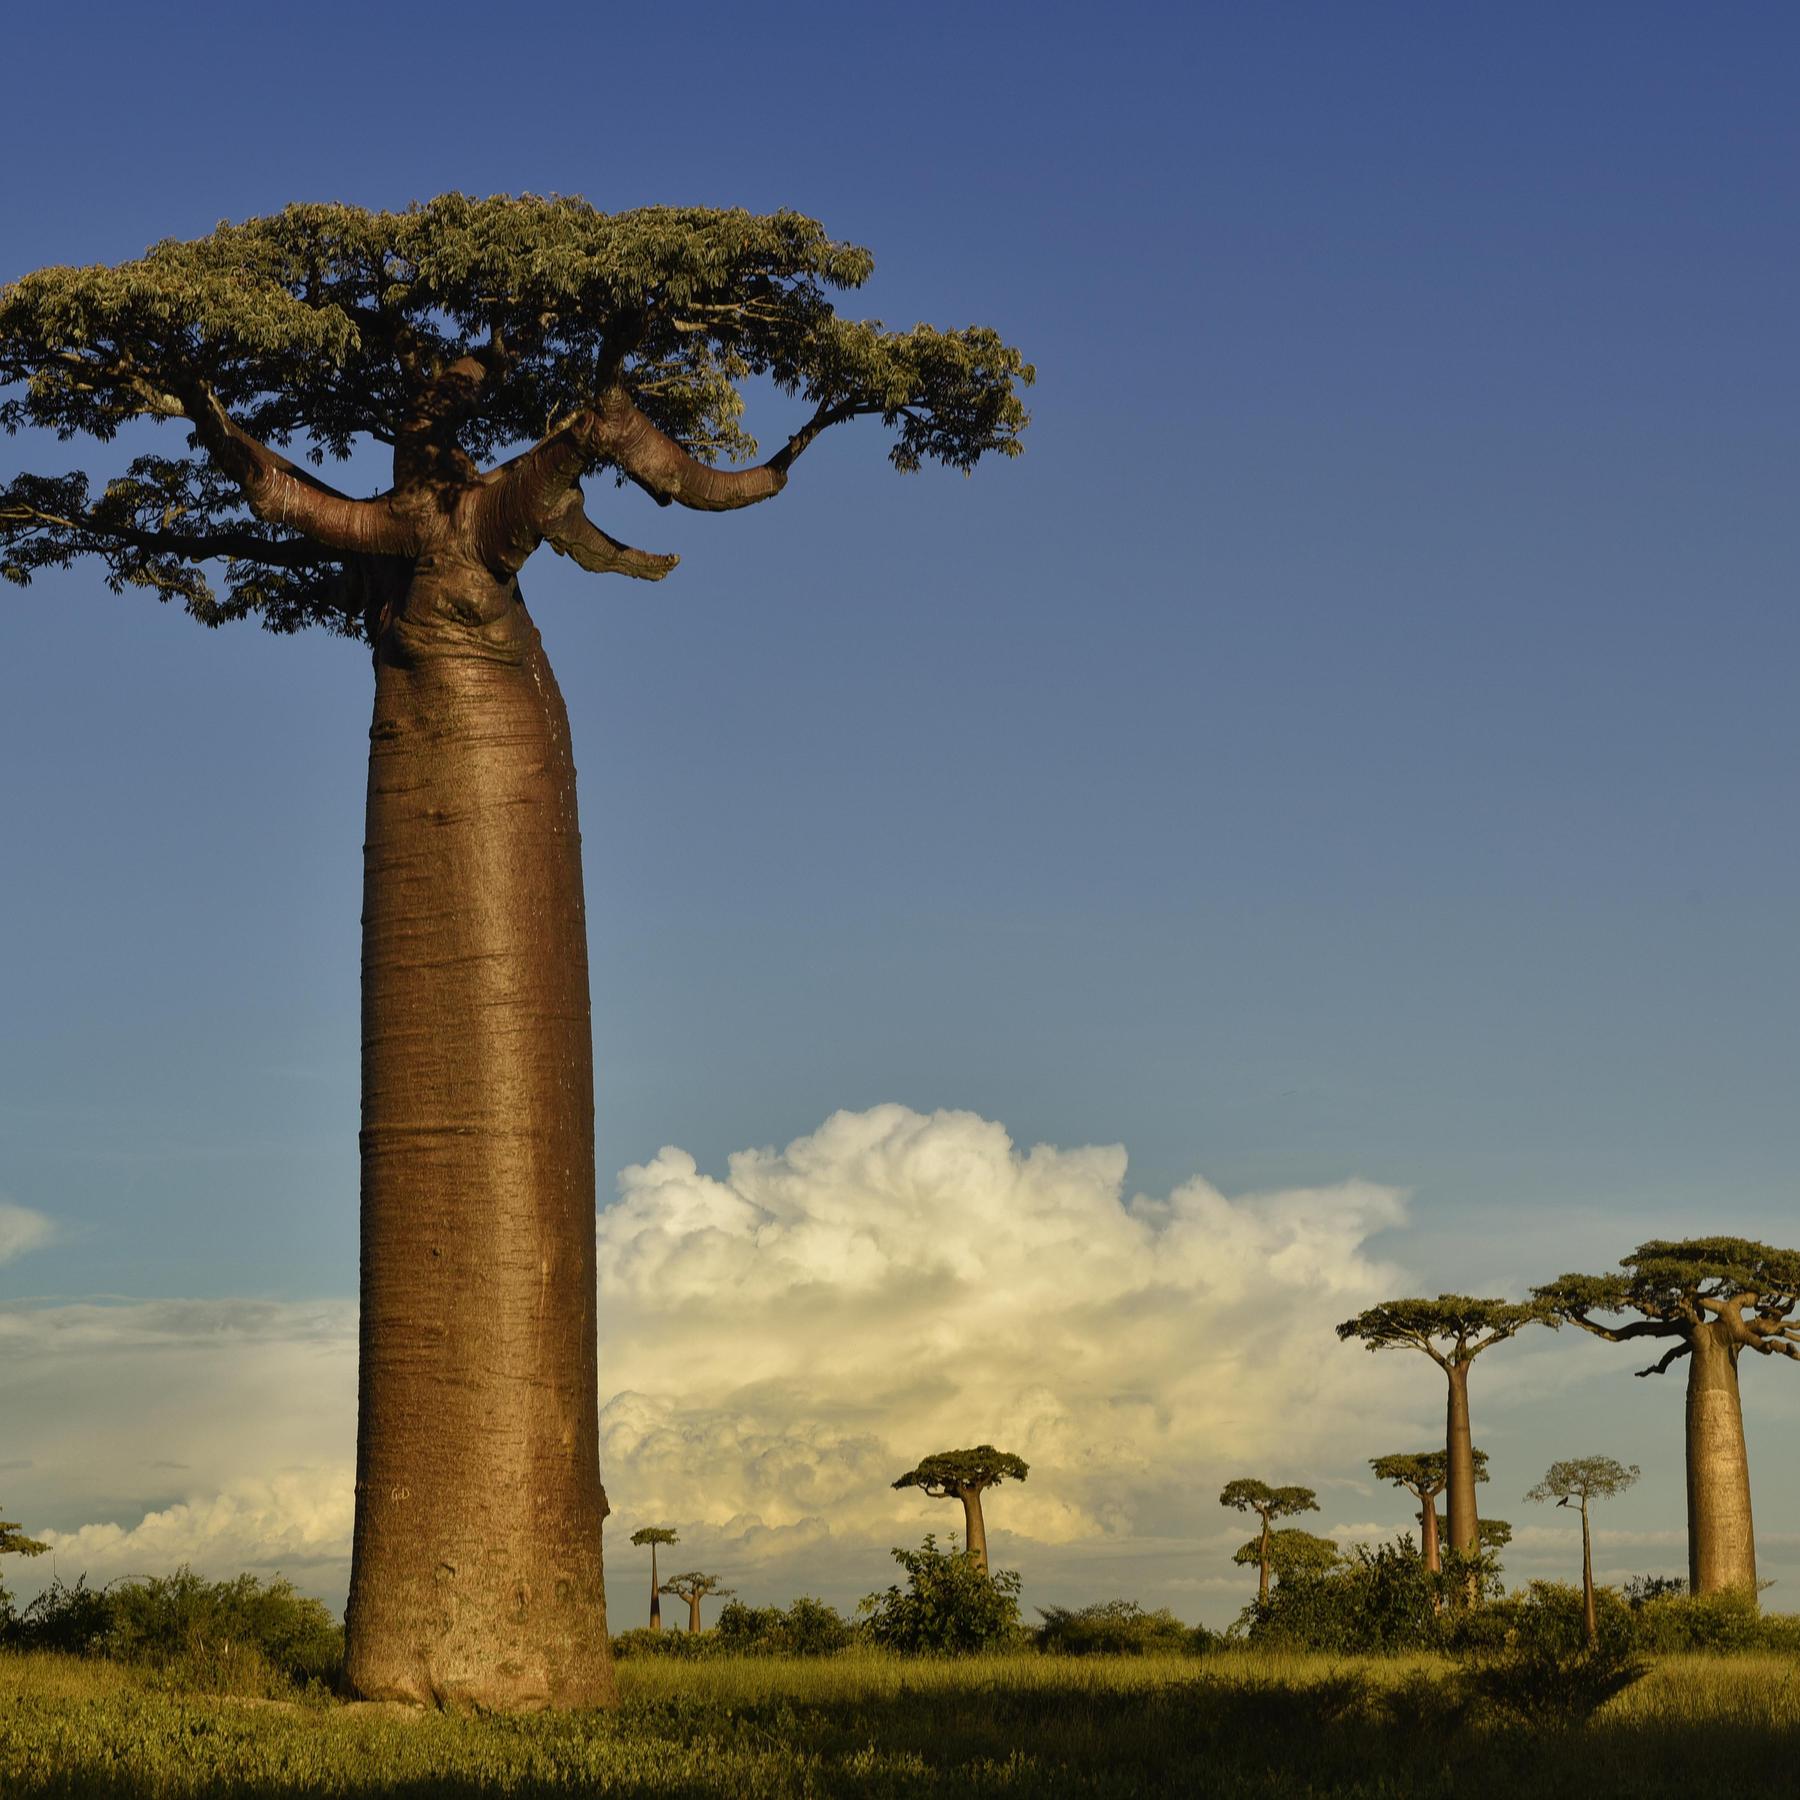 Баобаб дерево африканских саванн